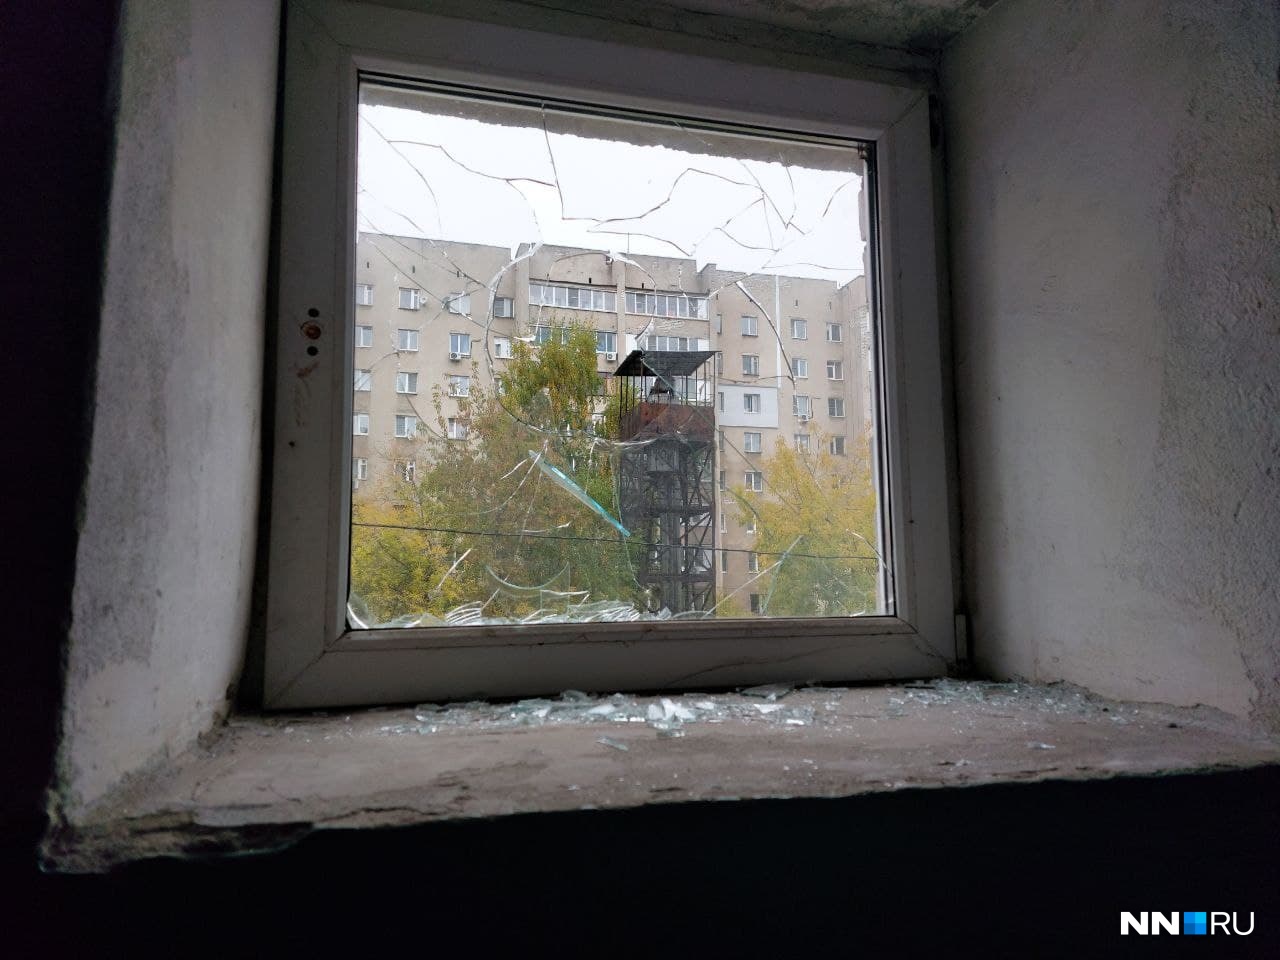 «Им стало душно». В Советском районе бабушка разбила окно, обвинив в этом соседей и попав на видео